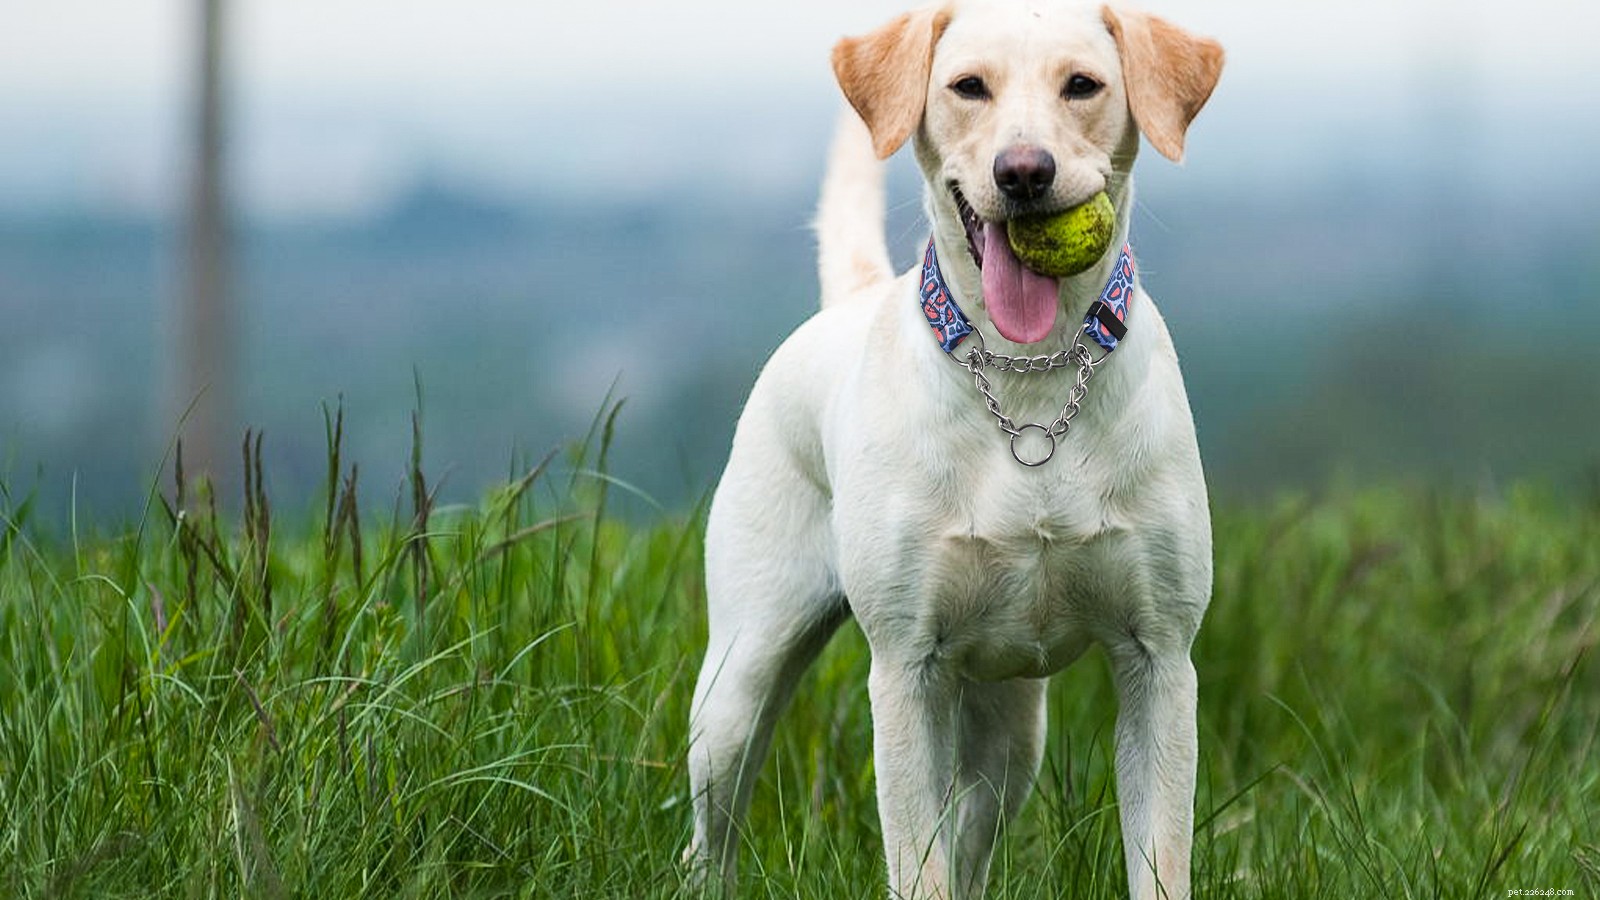 Nesprávné používání obojků pro psy může způsobit těchto 5 hlavních nebezpečí